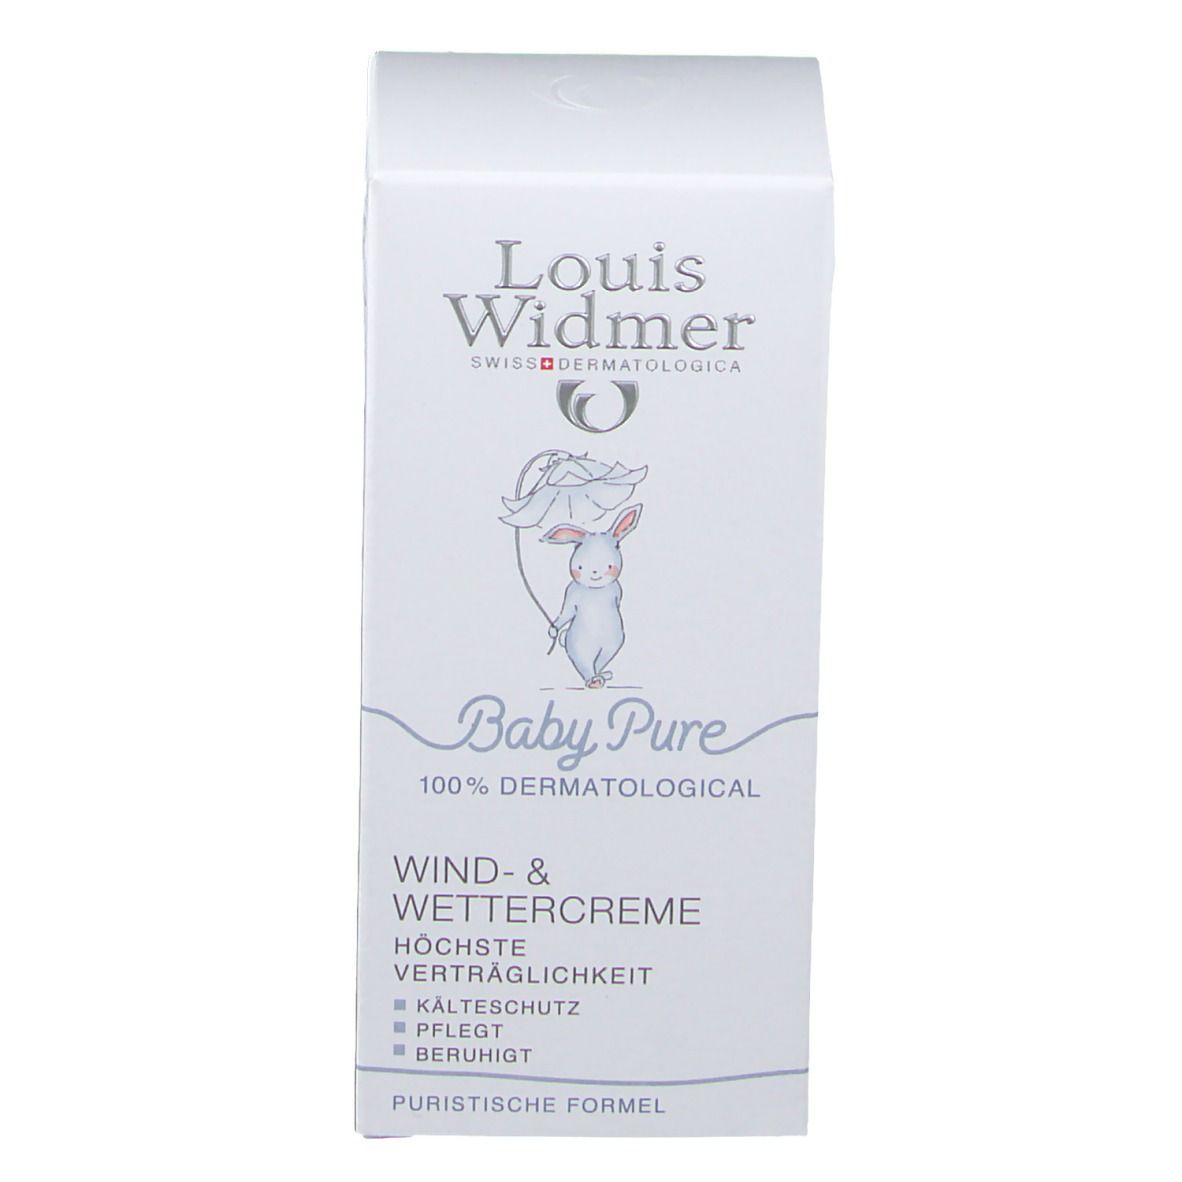 Louis Widmer BabyPure Wind- und Wettercreme